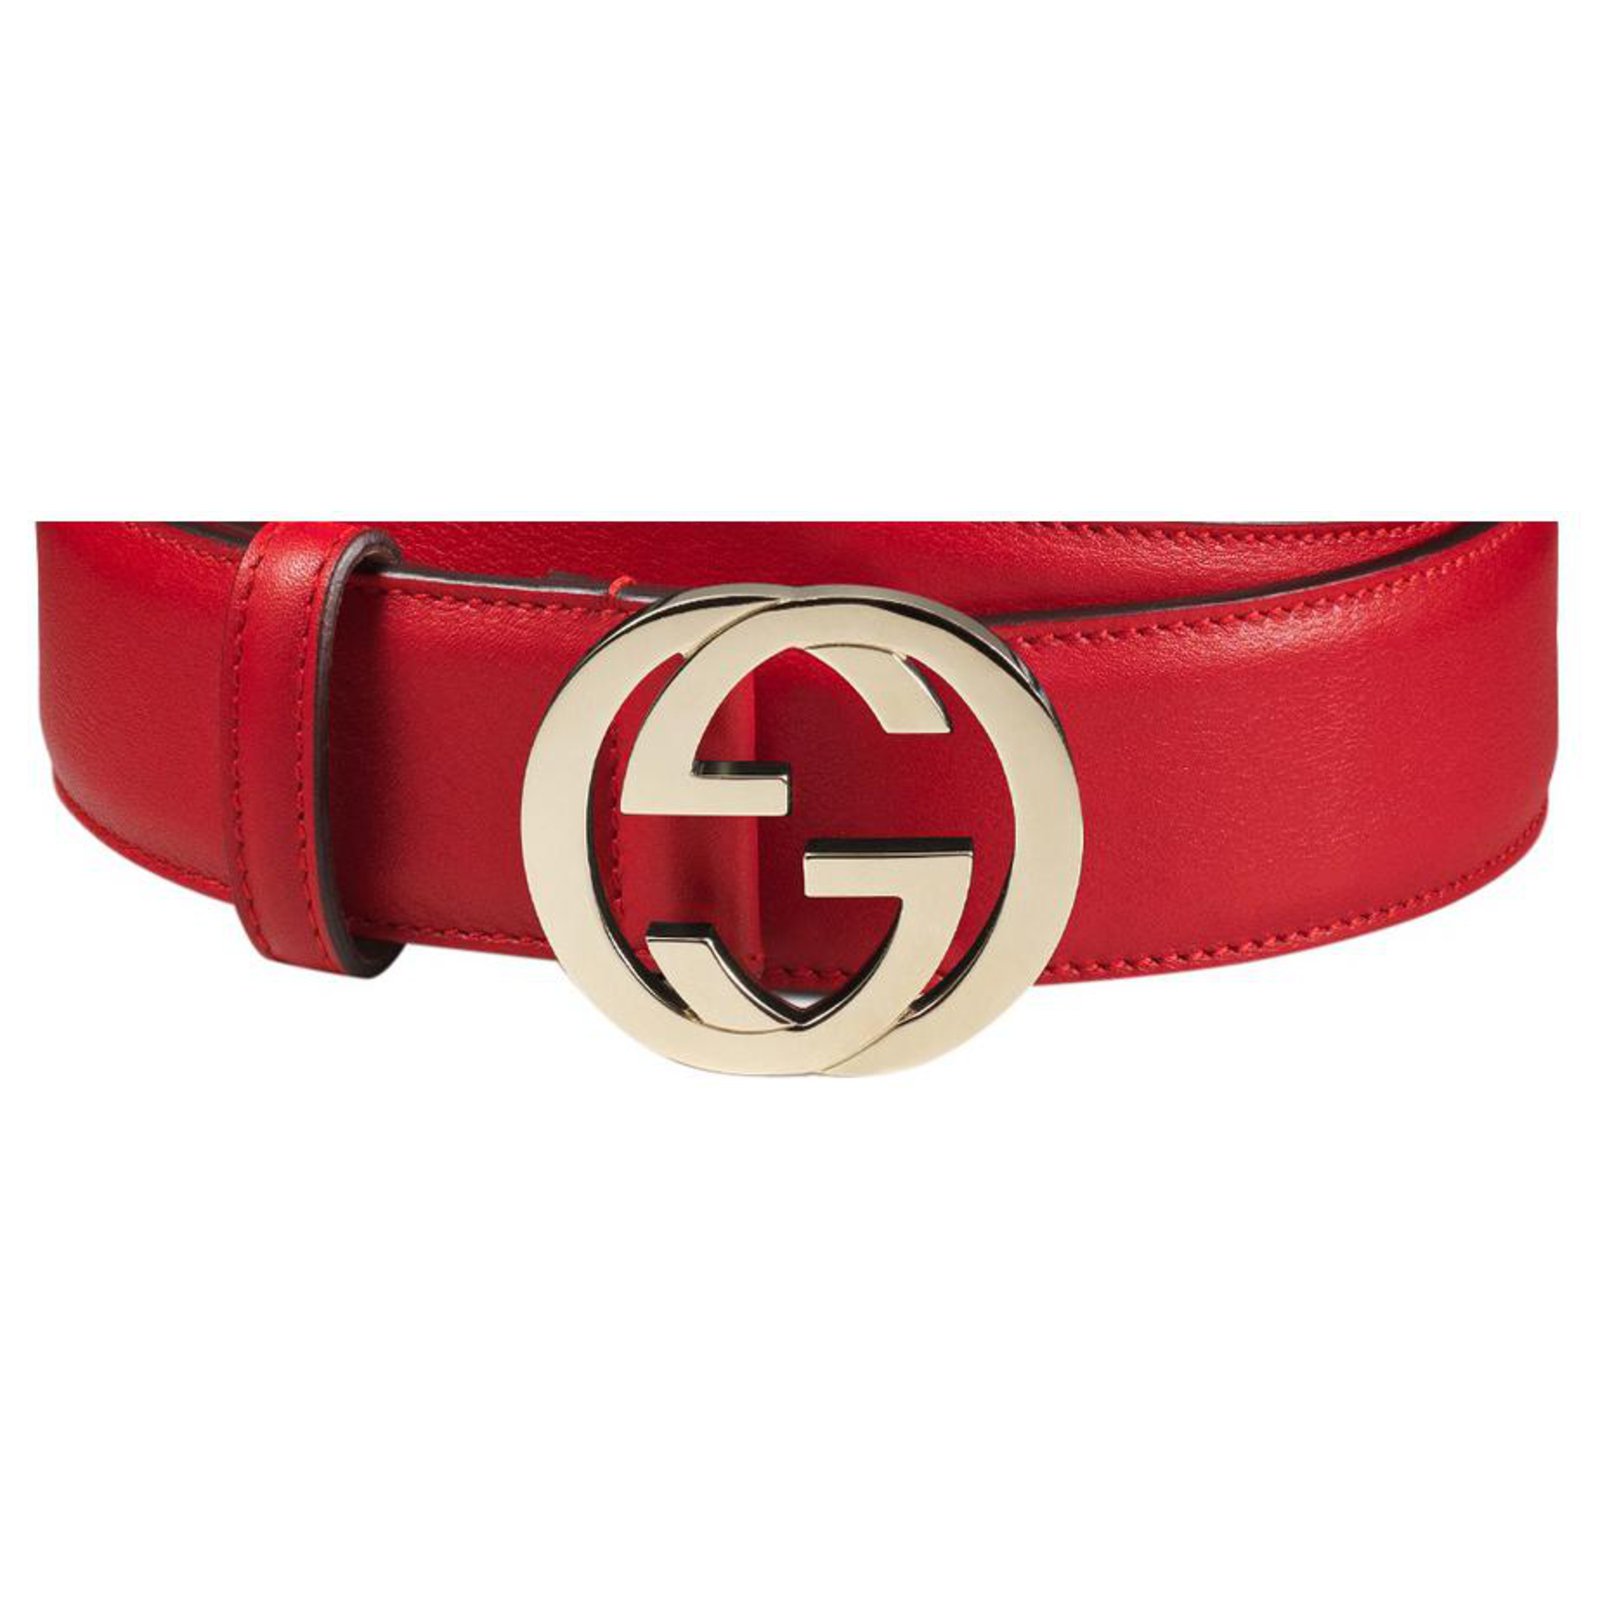 $300 gucci belt